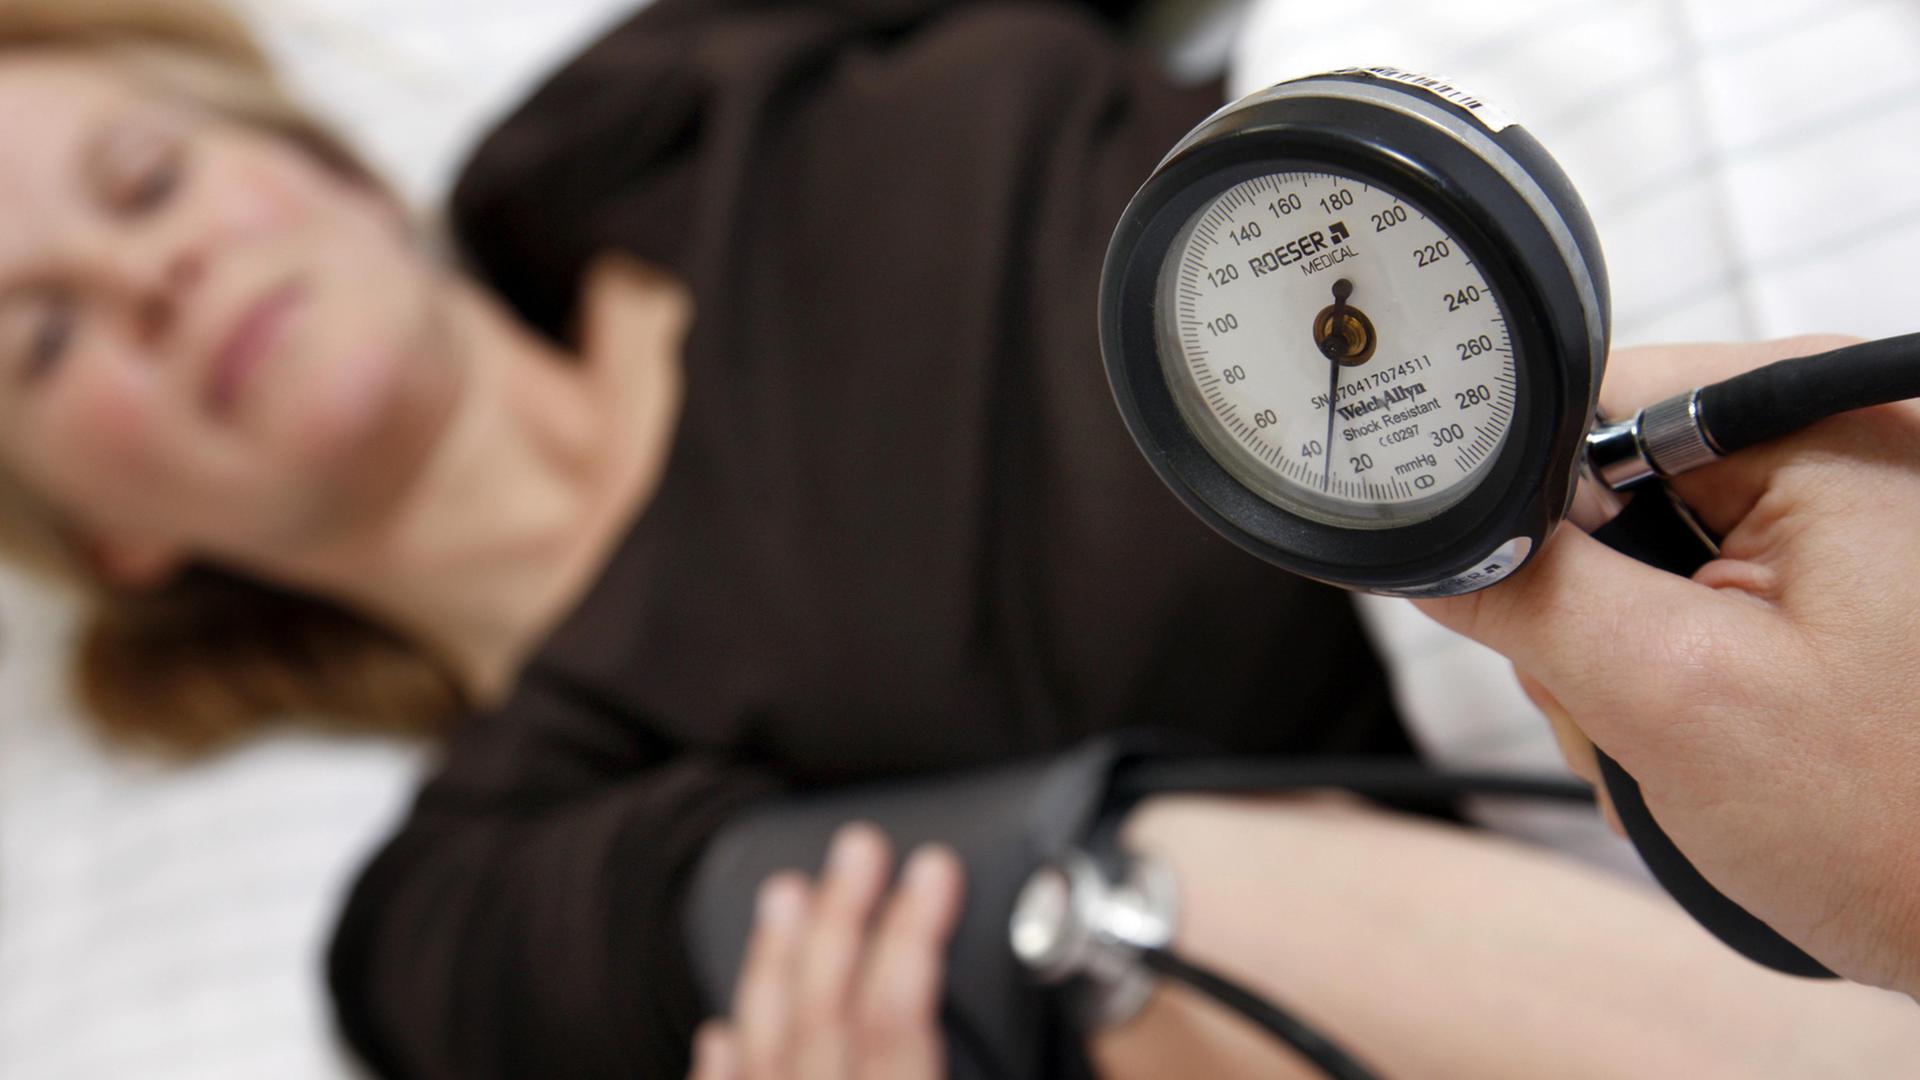 Ein Frau mit schwarzem Oberteil auf einer Liege; im Vordergrund ist die Messuhr eine Blutdruckgeräts zu sehen, das eine andere Person, die nicht im Bild ist, in der Hand hält.